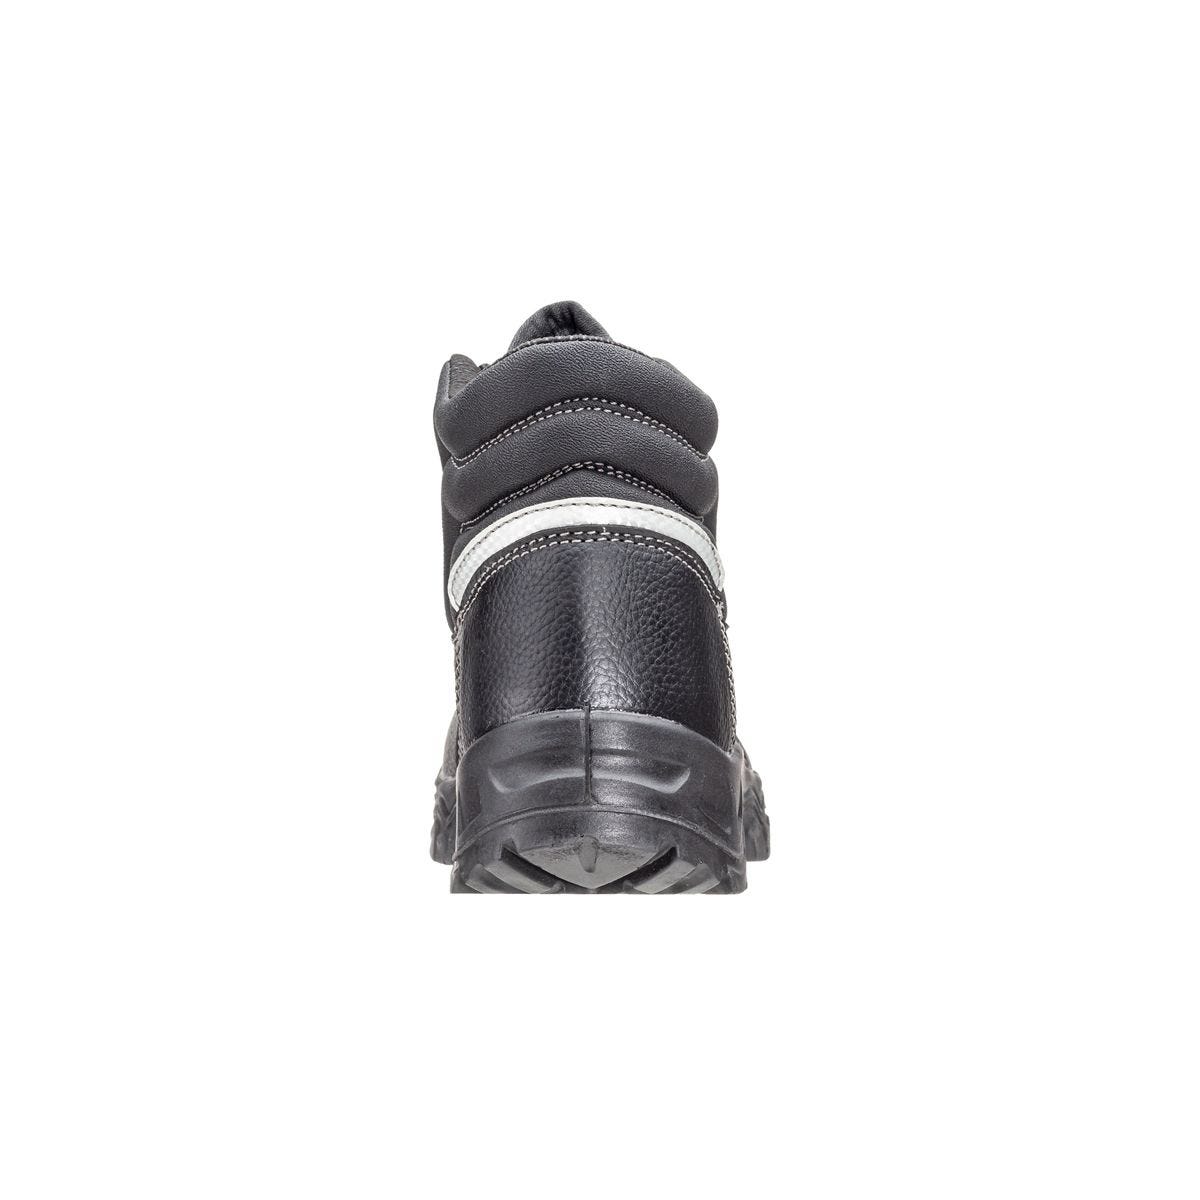 Chaussures de sécurité hautes Azurite II S3 ESD noir - Coverguard - Taille 37 4